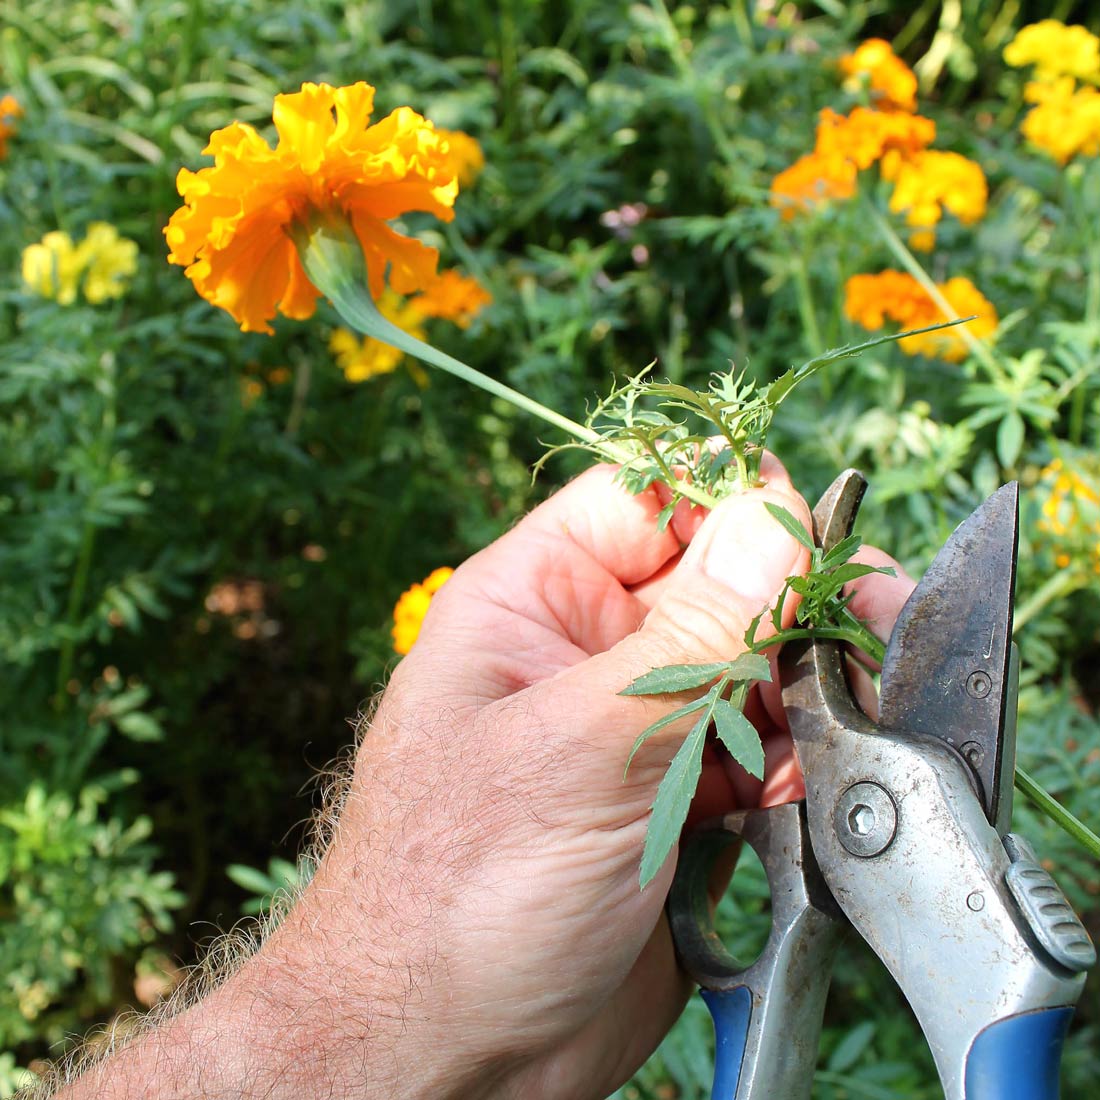 Cutting a marigold flower stem